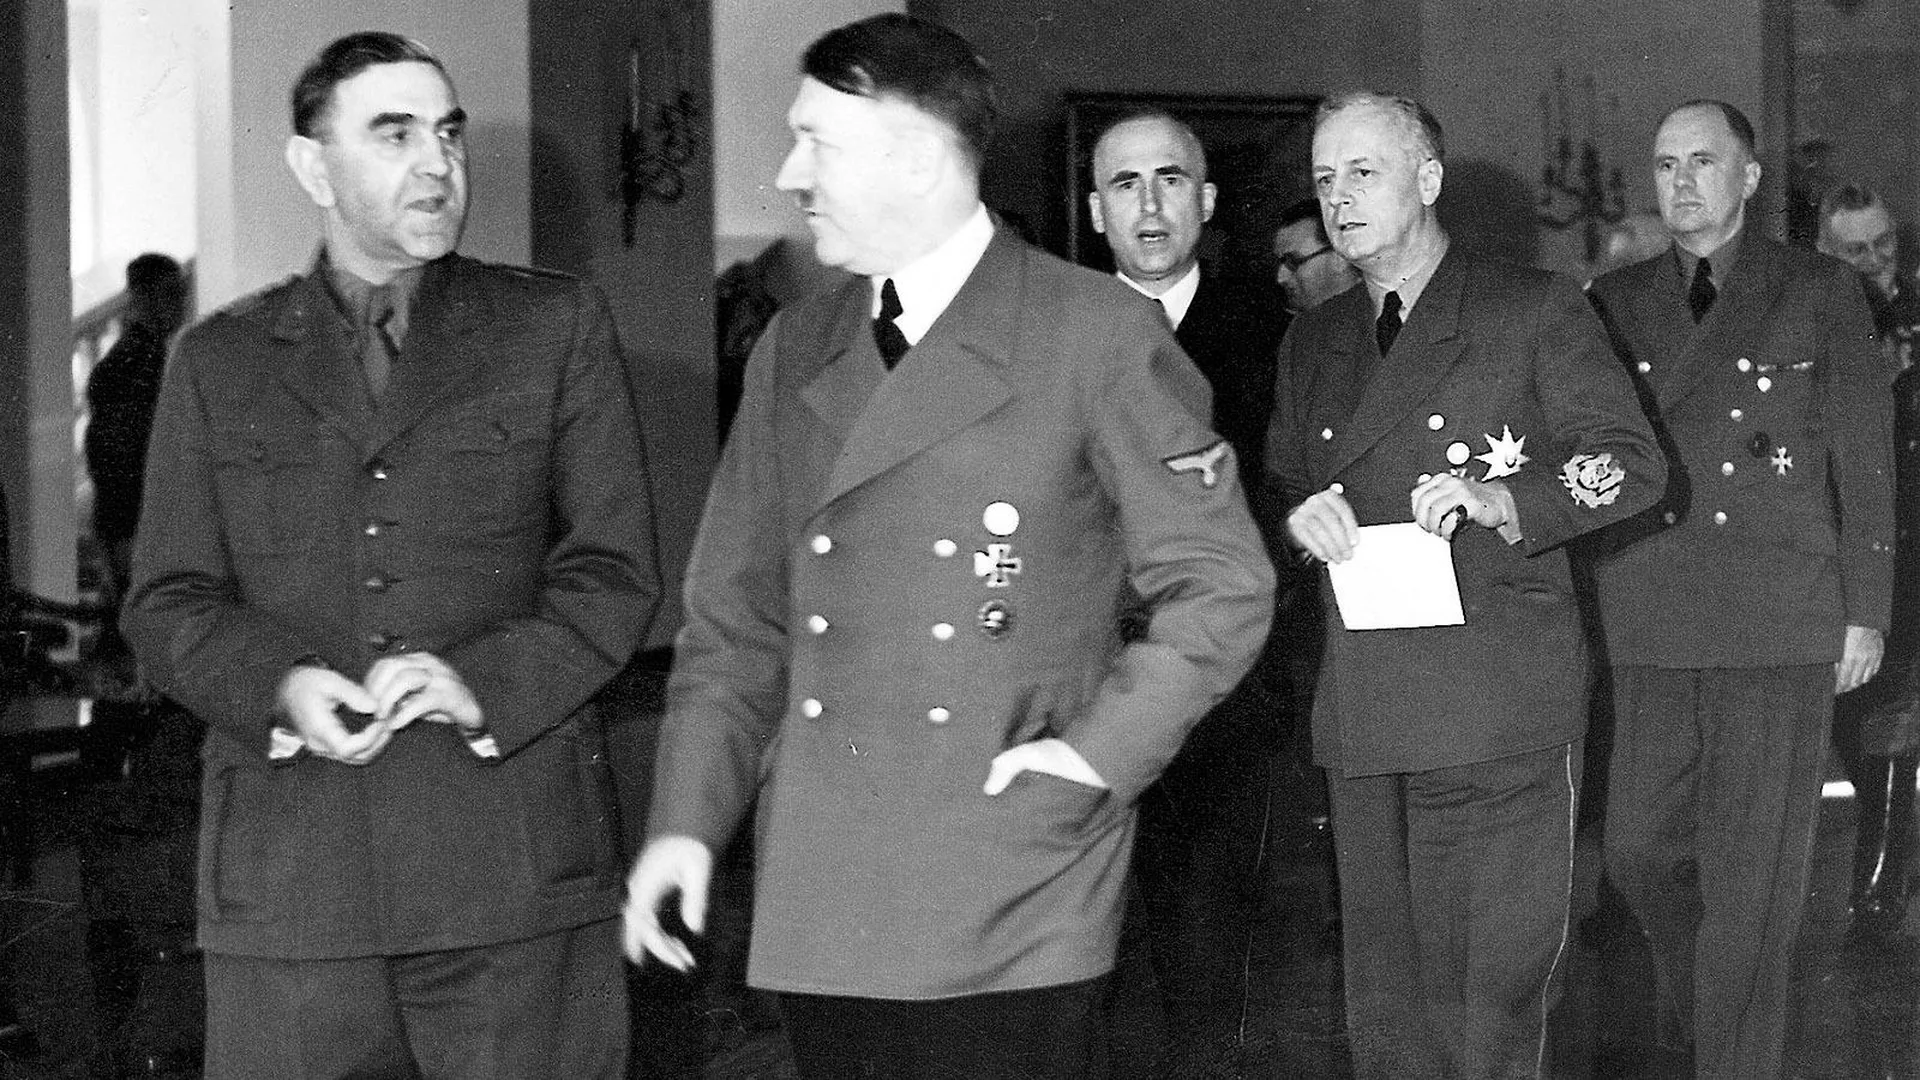 Глава хорватского государства Анте Павелич беседует с Адольфом Гитлером, следом идут рейхсминистр иностранных дел Германии Иоахим фон Риббентроп и министр иностранных дел Хорватии Миле Будак, 27 апреля 1943 года. Фото: Scherl